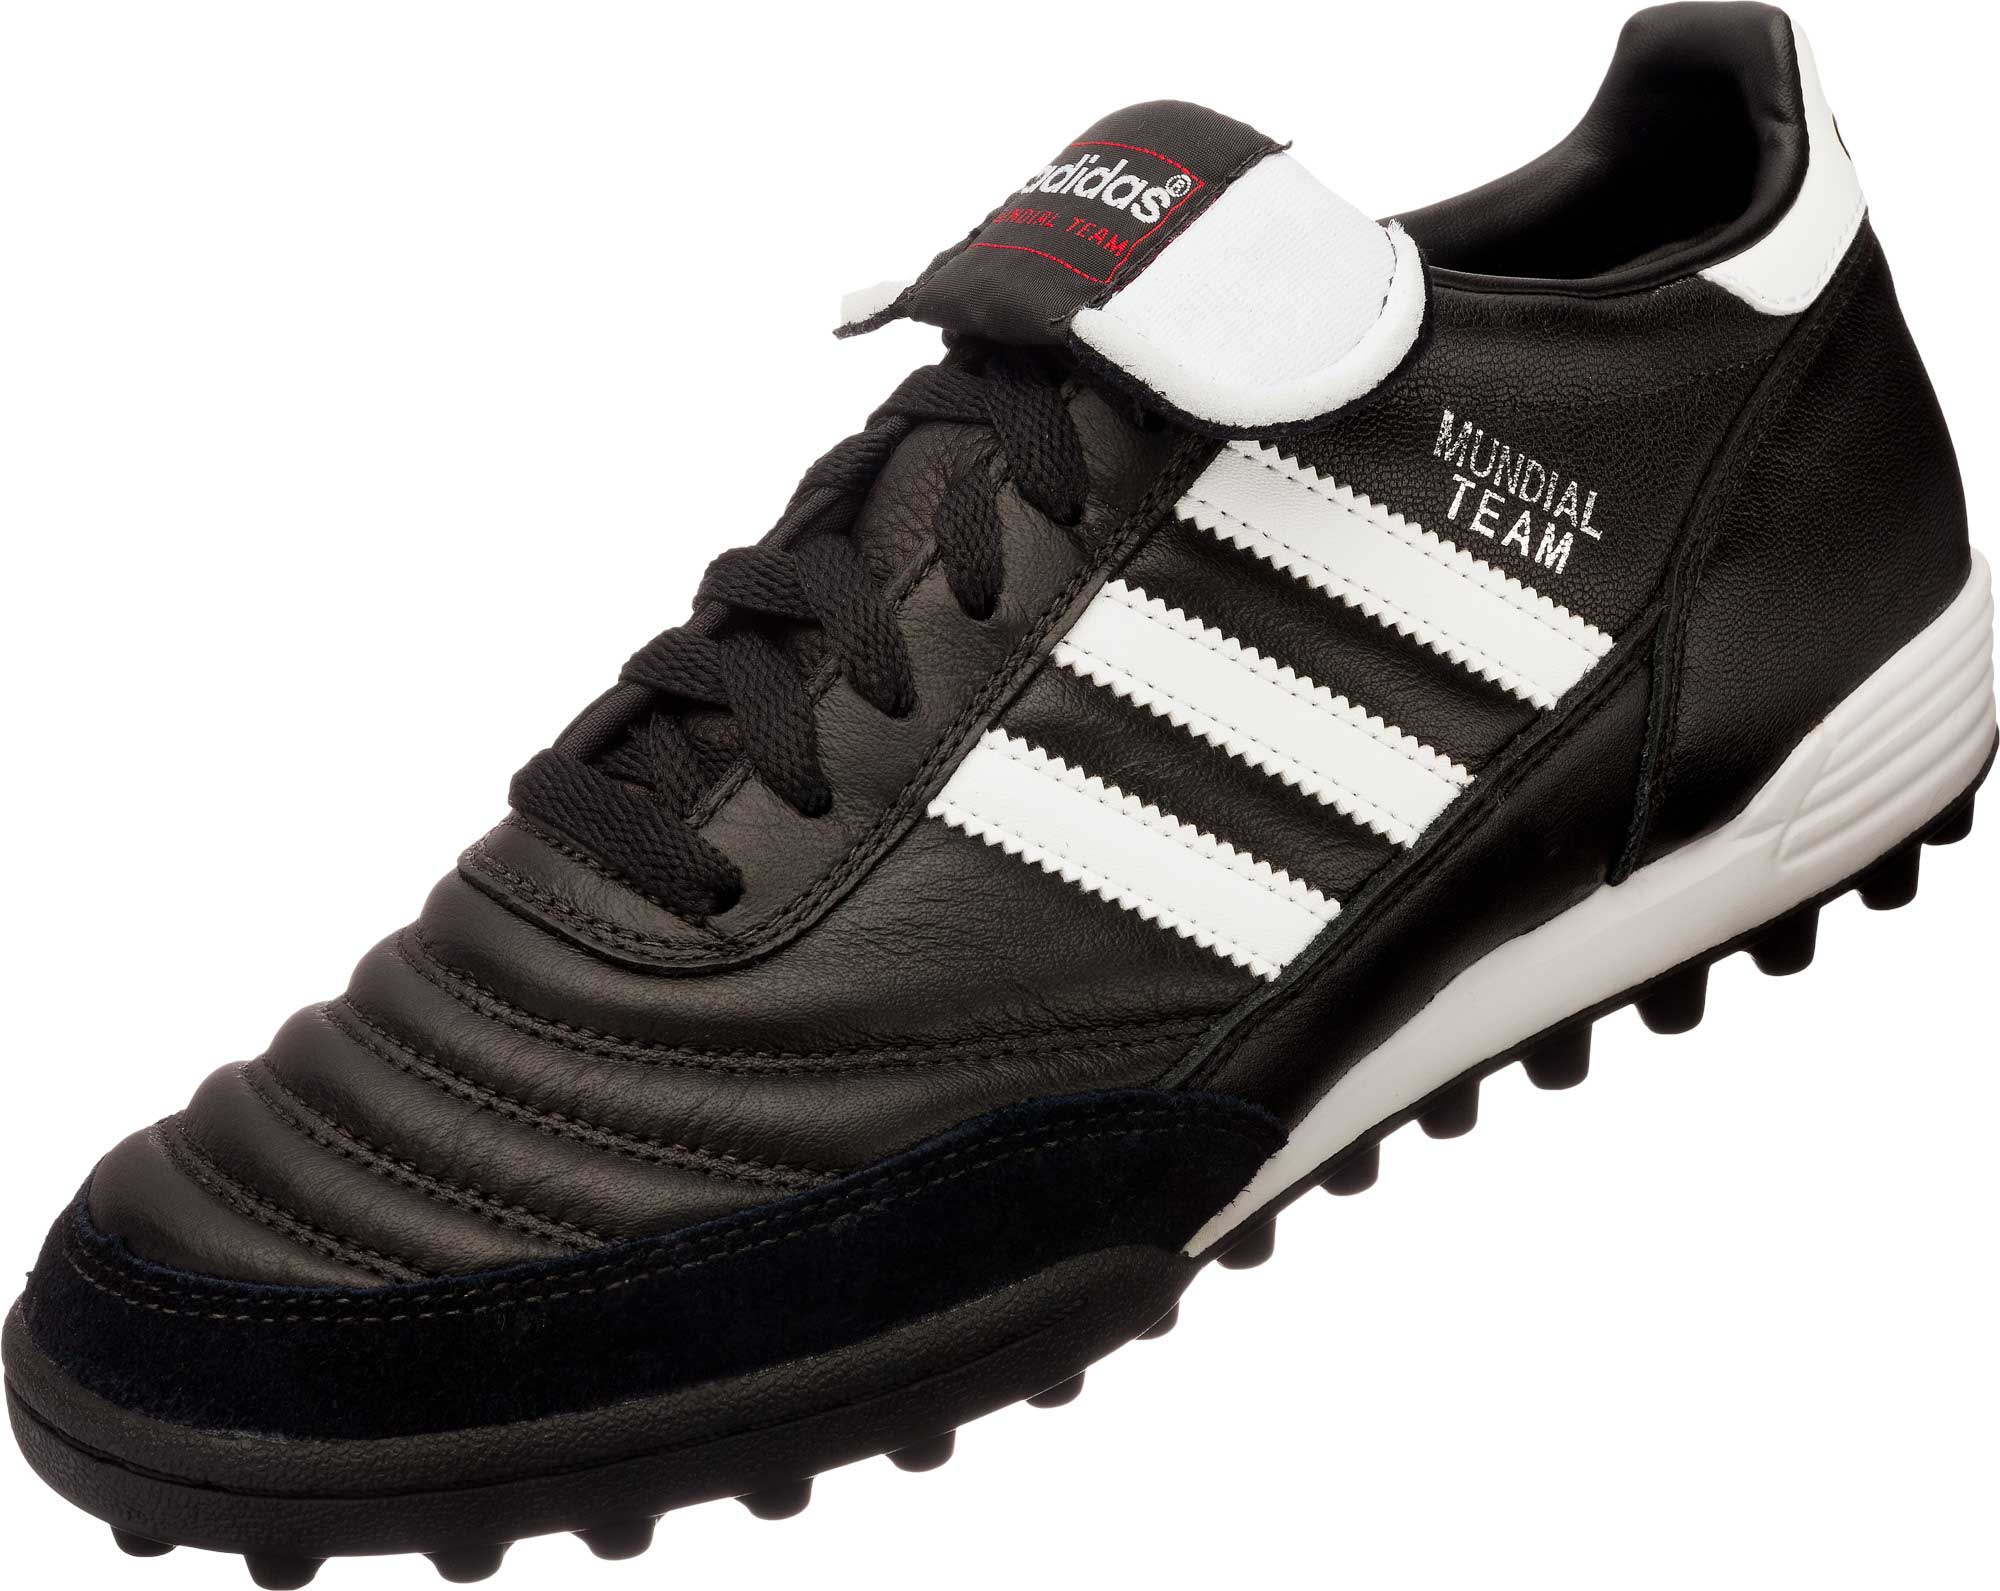 men's soccer turf shoes